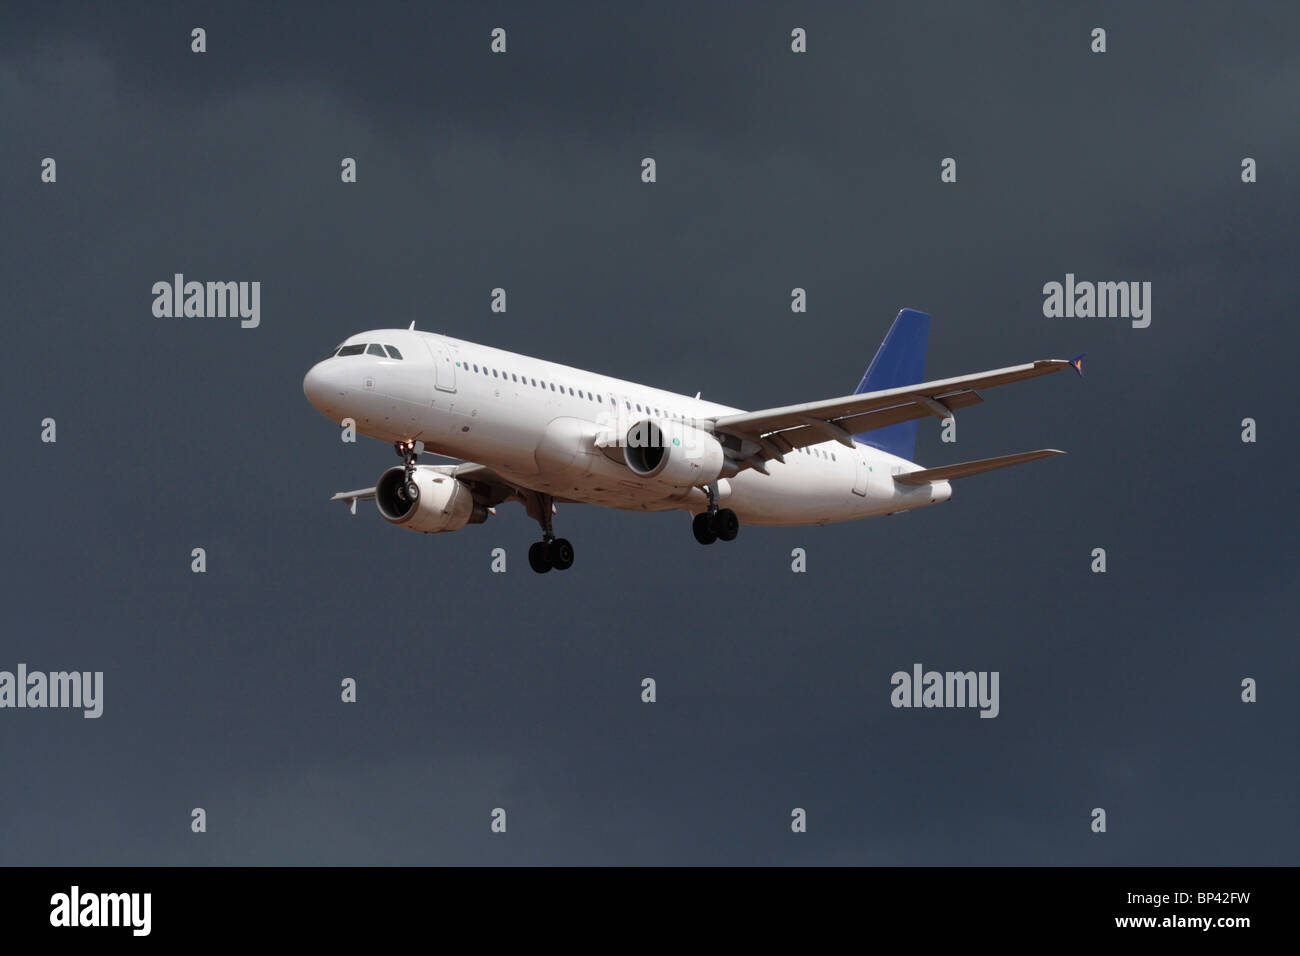 Airbus A320, aereo da passeggeri che vola in avvicinamento in un cielo nuvoloso scuro. Nessun livrea e dettagli proprietari cancellati. Viaggi aerei commerciali, aviazione. Foto Stock